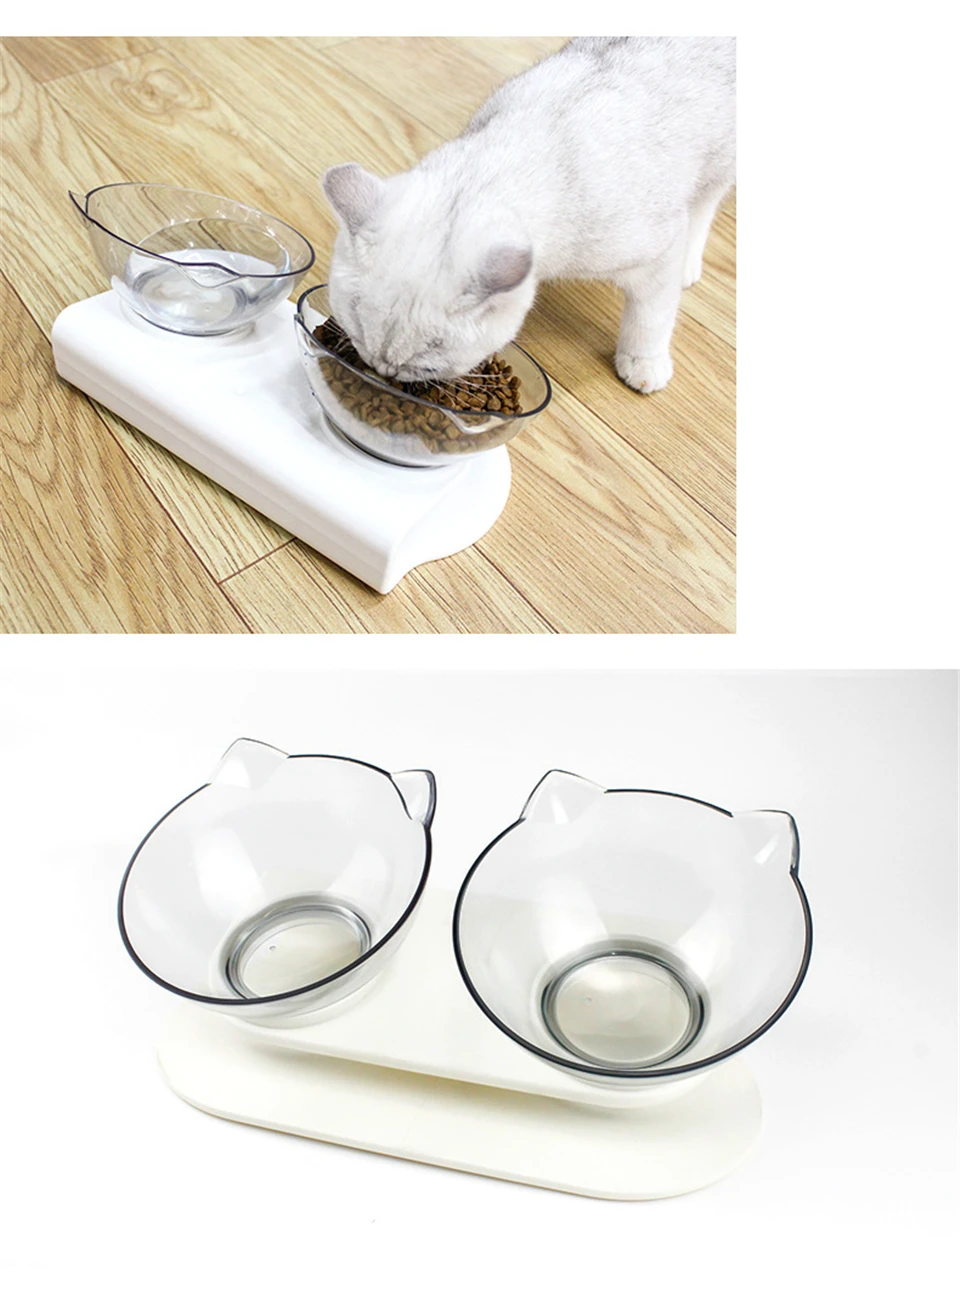 ПЭТ кошки Прозрачная чаша с держателем противоскользящее кошачье блюдо для еды питатель для домашних животных миска для воды идеально подходит для кошек и маленьких собак